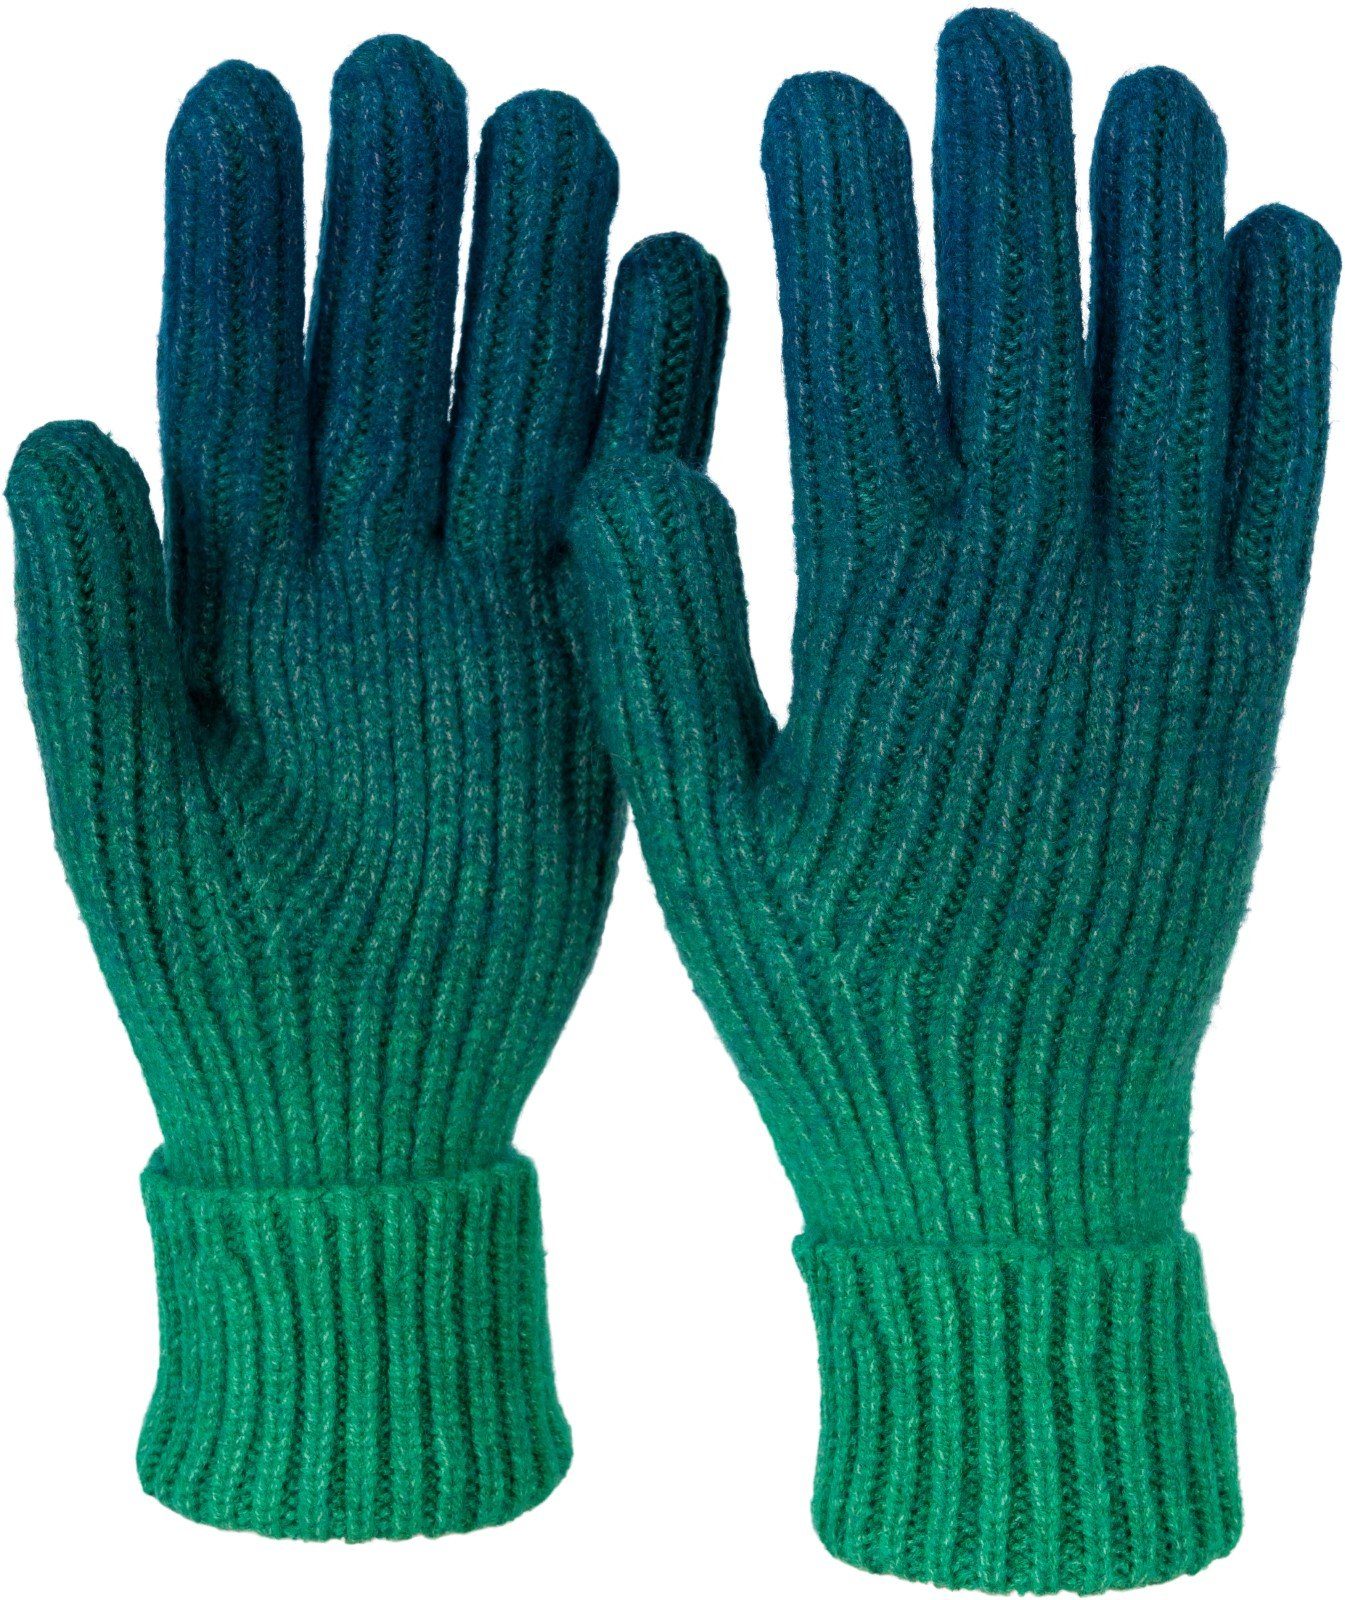 Muster Strickhandschuhe Petrol-Grün Farbverlauf Strickhandschuhe styleBREAKER